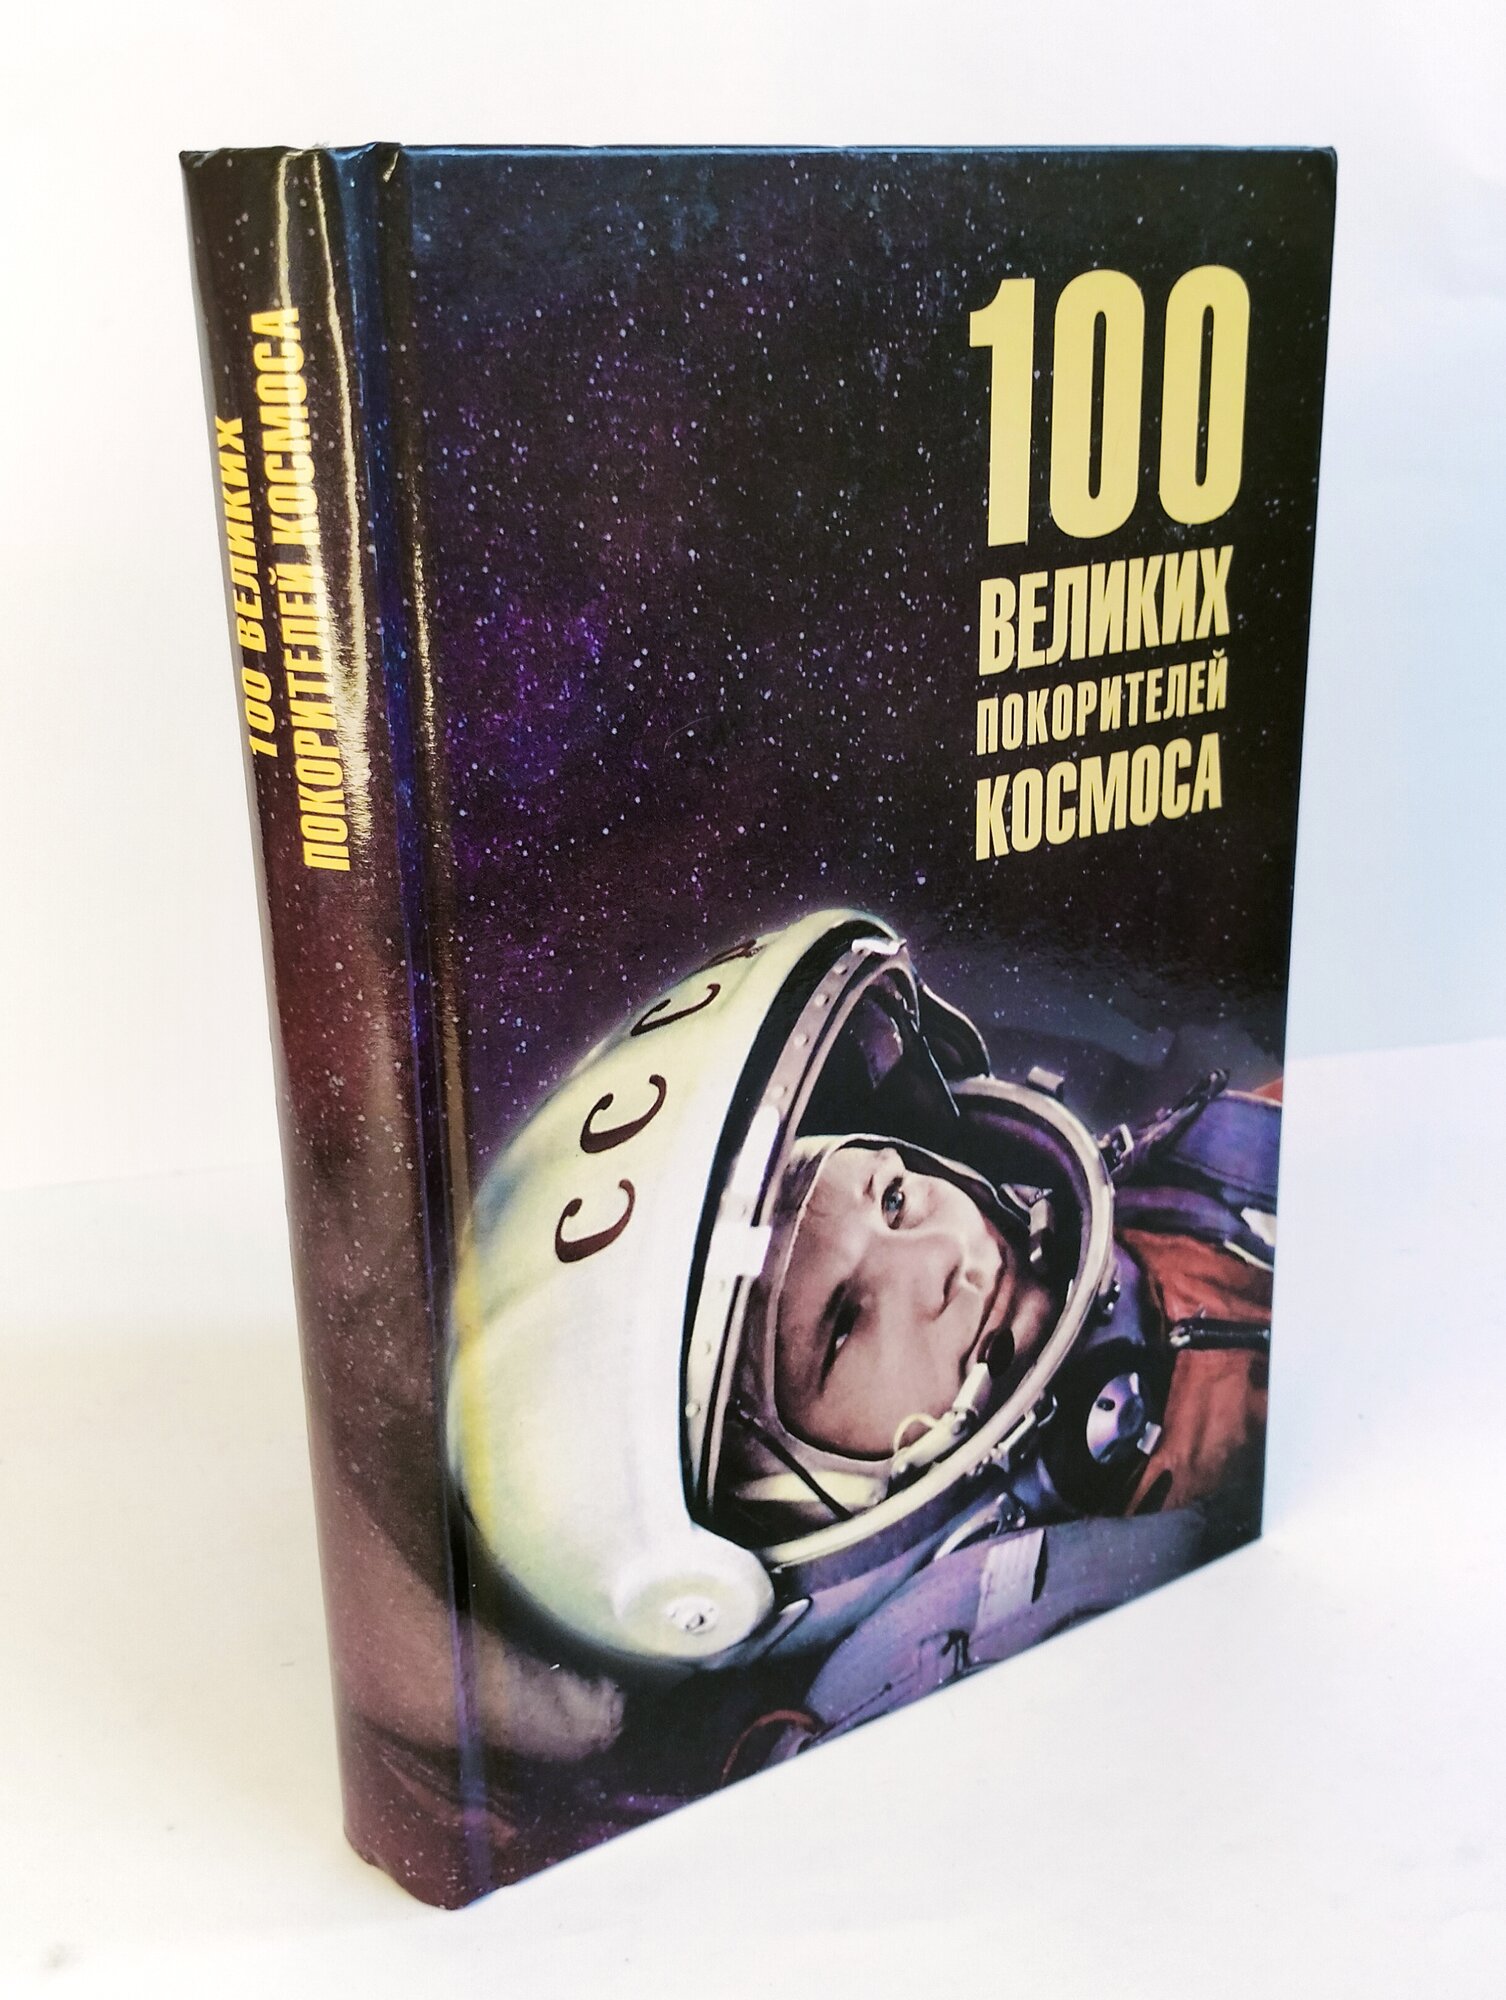 100 великих покорителей космоса - фото №11